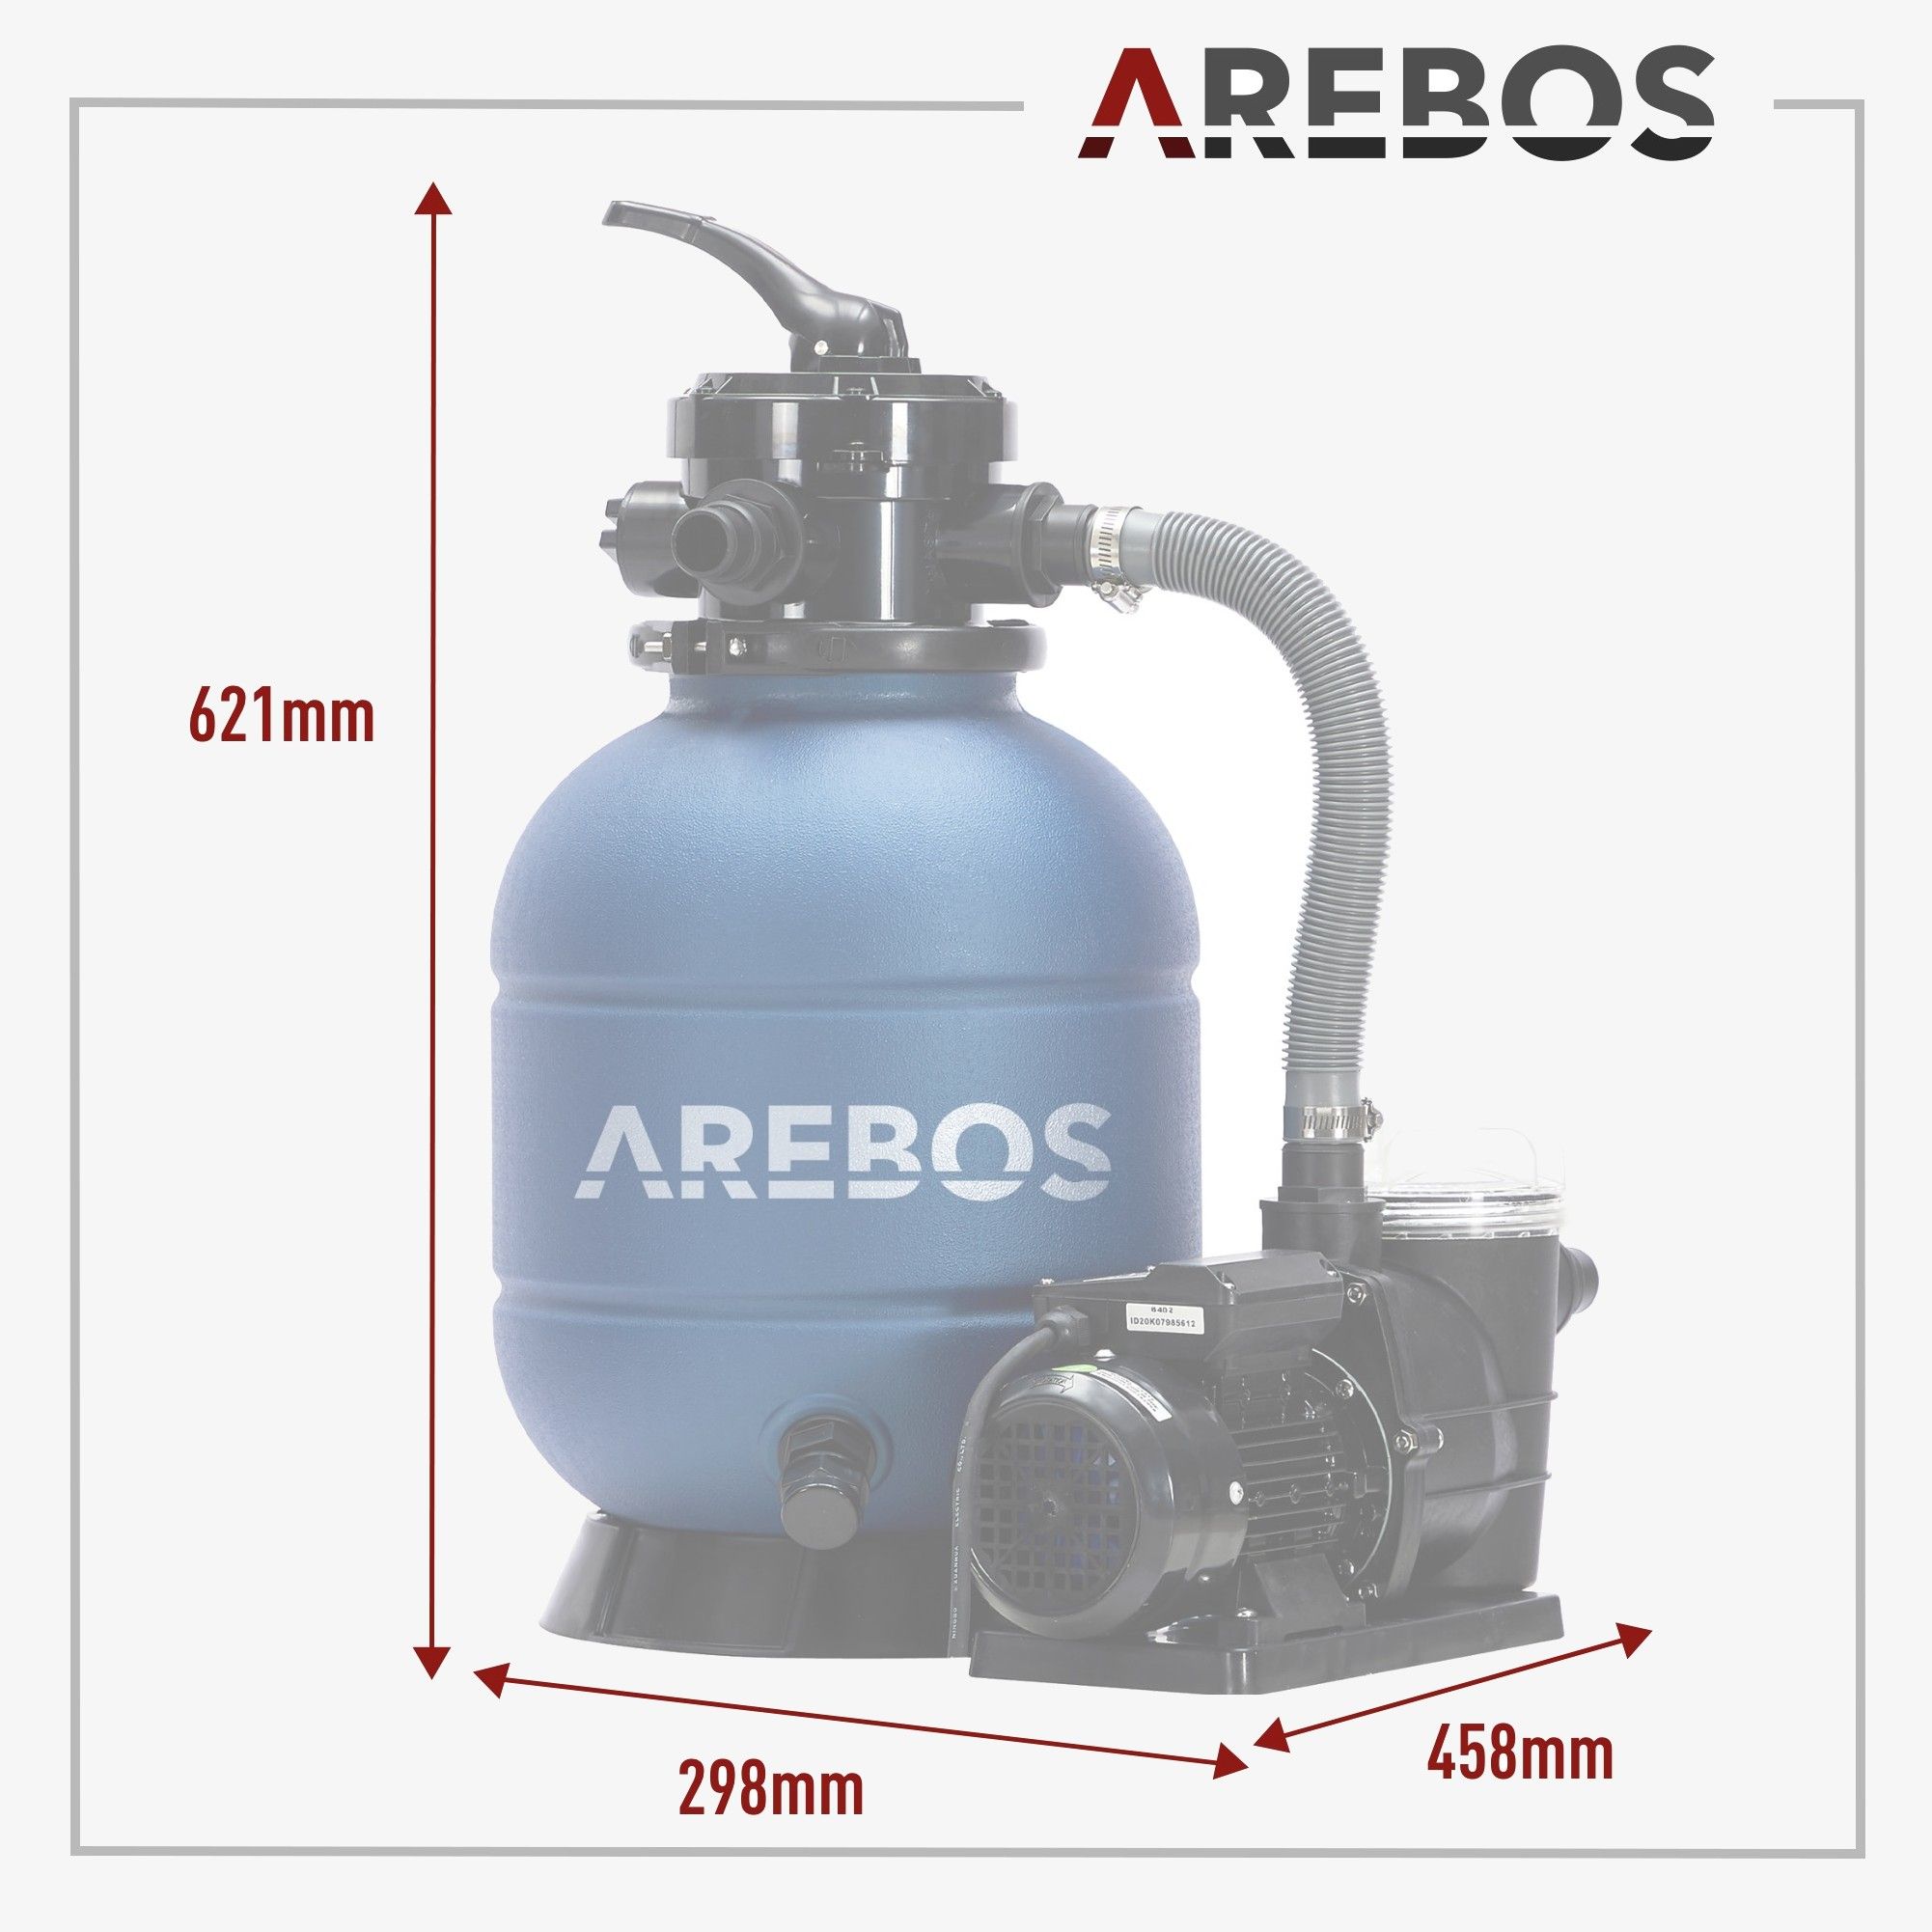 AREBOS Filtre a Sable avec Pompe 400W + 700g de balles de Filtre + Tuyau de  2m | Gris | 10200 L/h | Capacité du réservoir jusqu'à 20 kg de Sable 